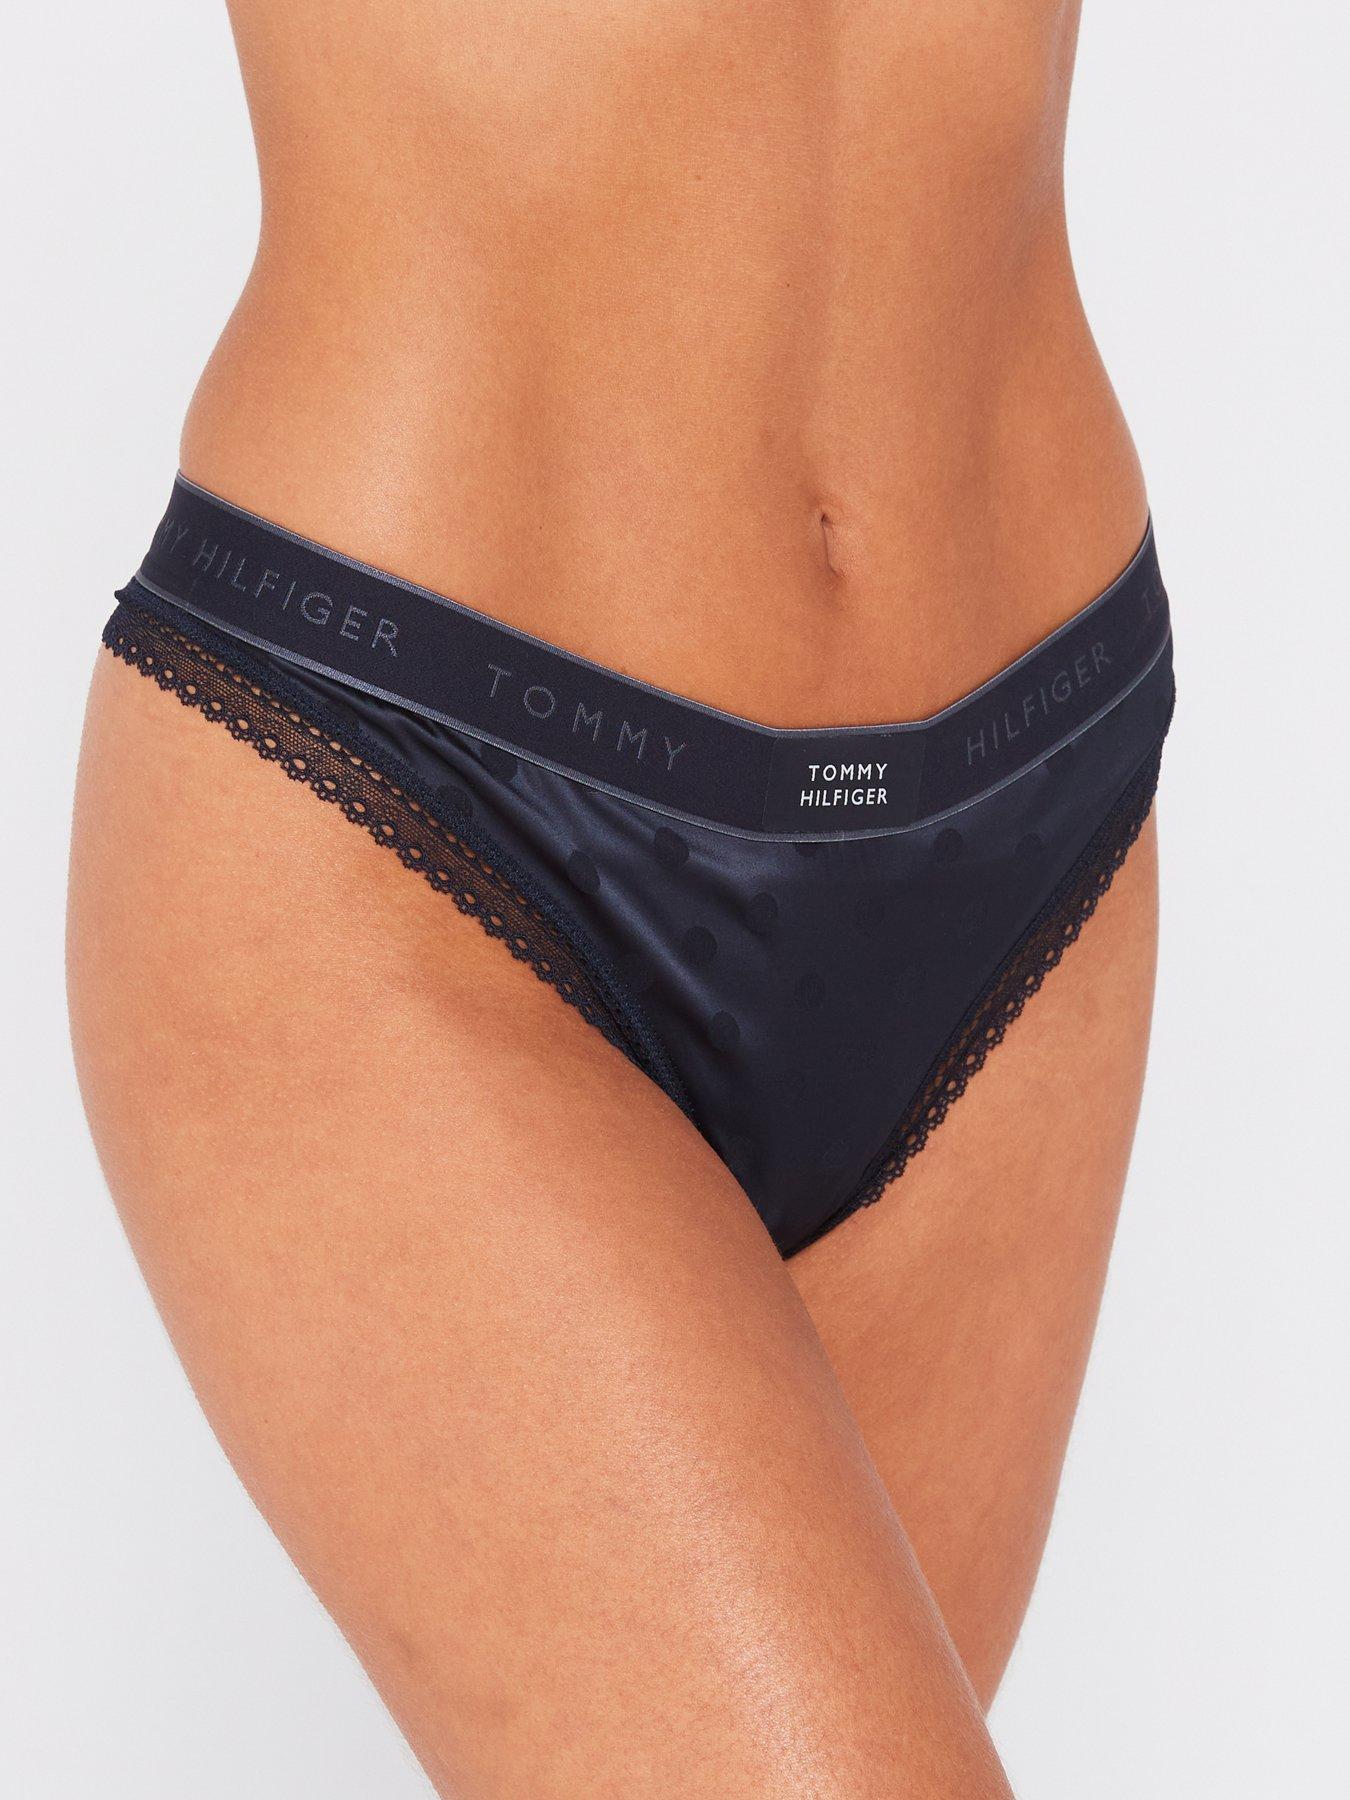 Shop Tommy Hilfiger Underwear Women online